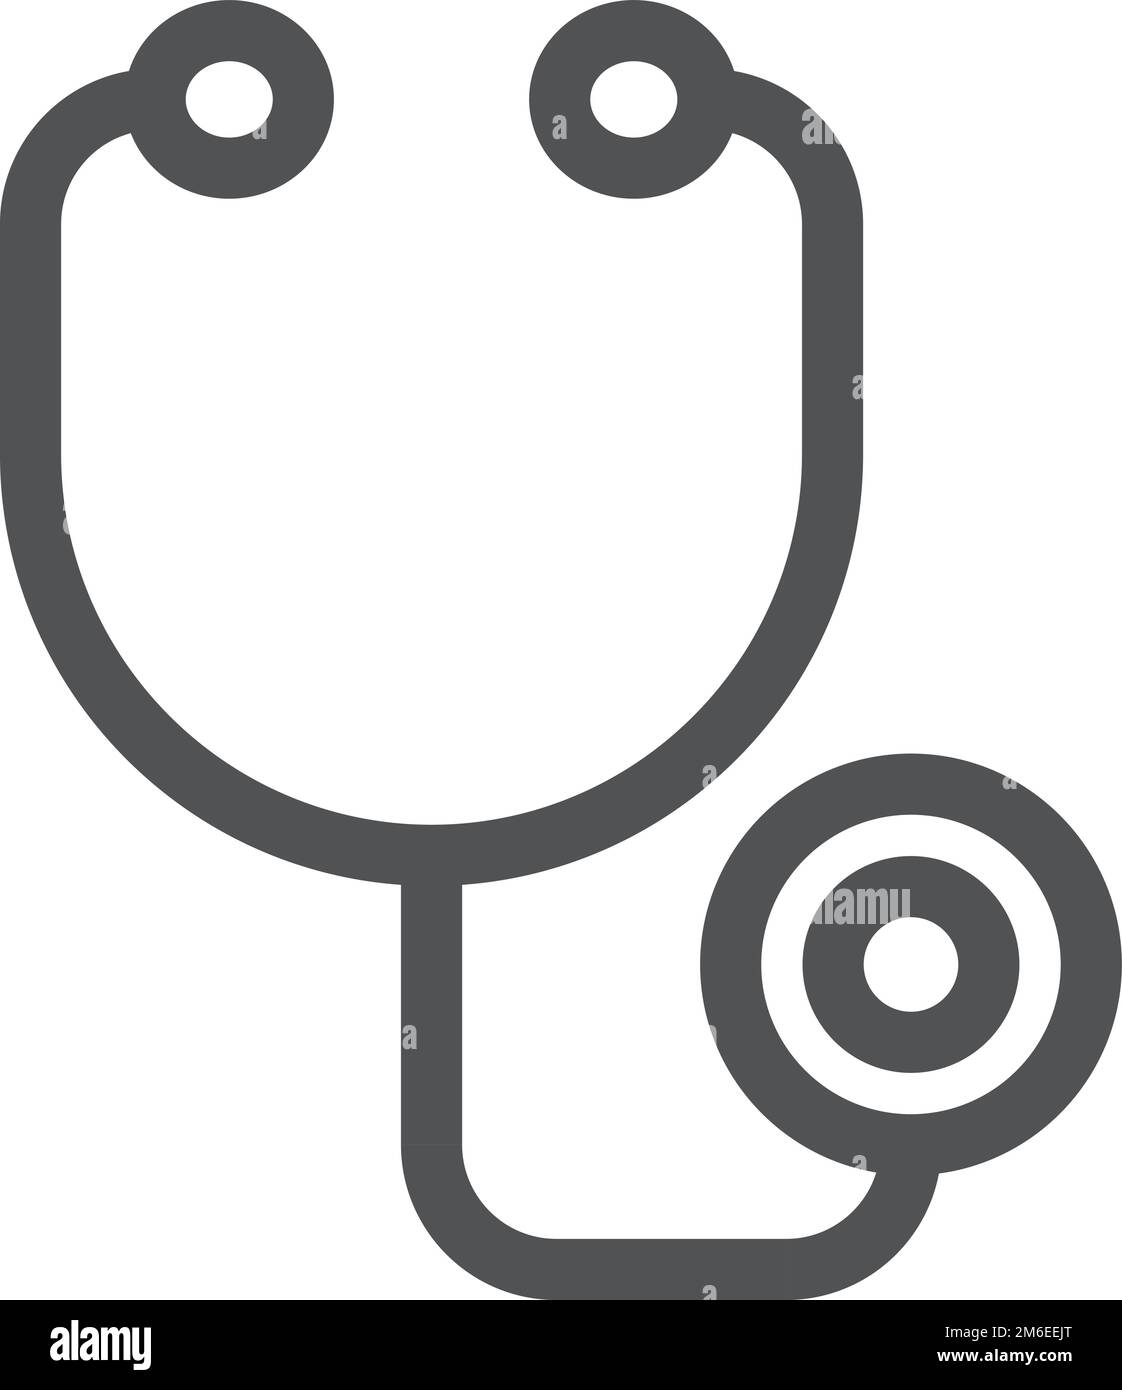 Stethoskop-Symbol. Lineares Symbol für Arztausrüstung. Medizinisches Werkzeug Stock Vektor